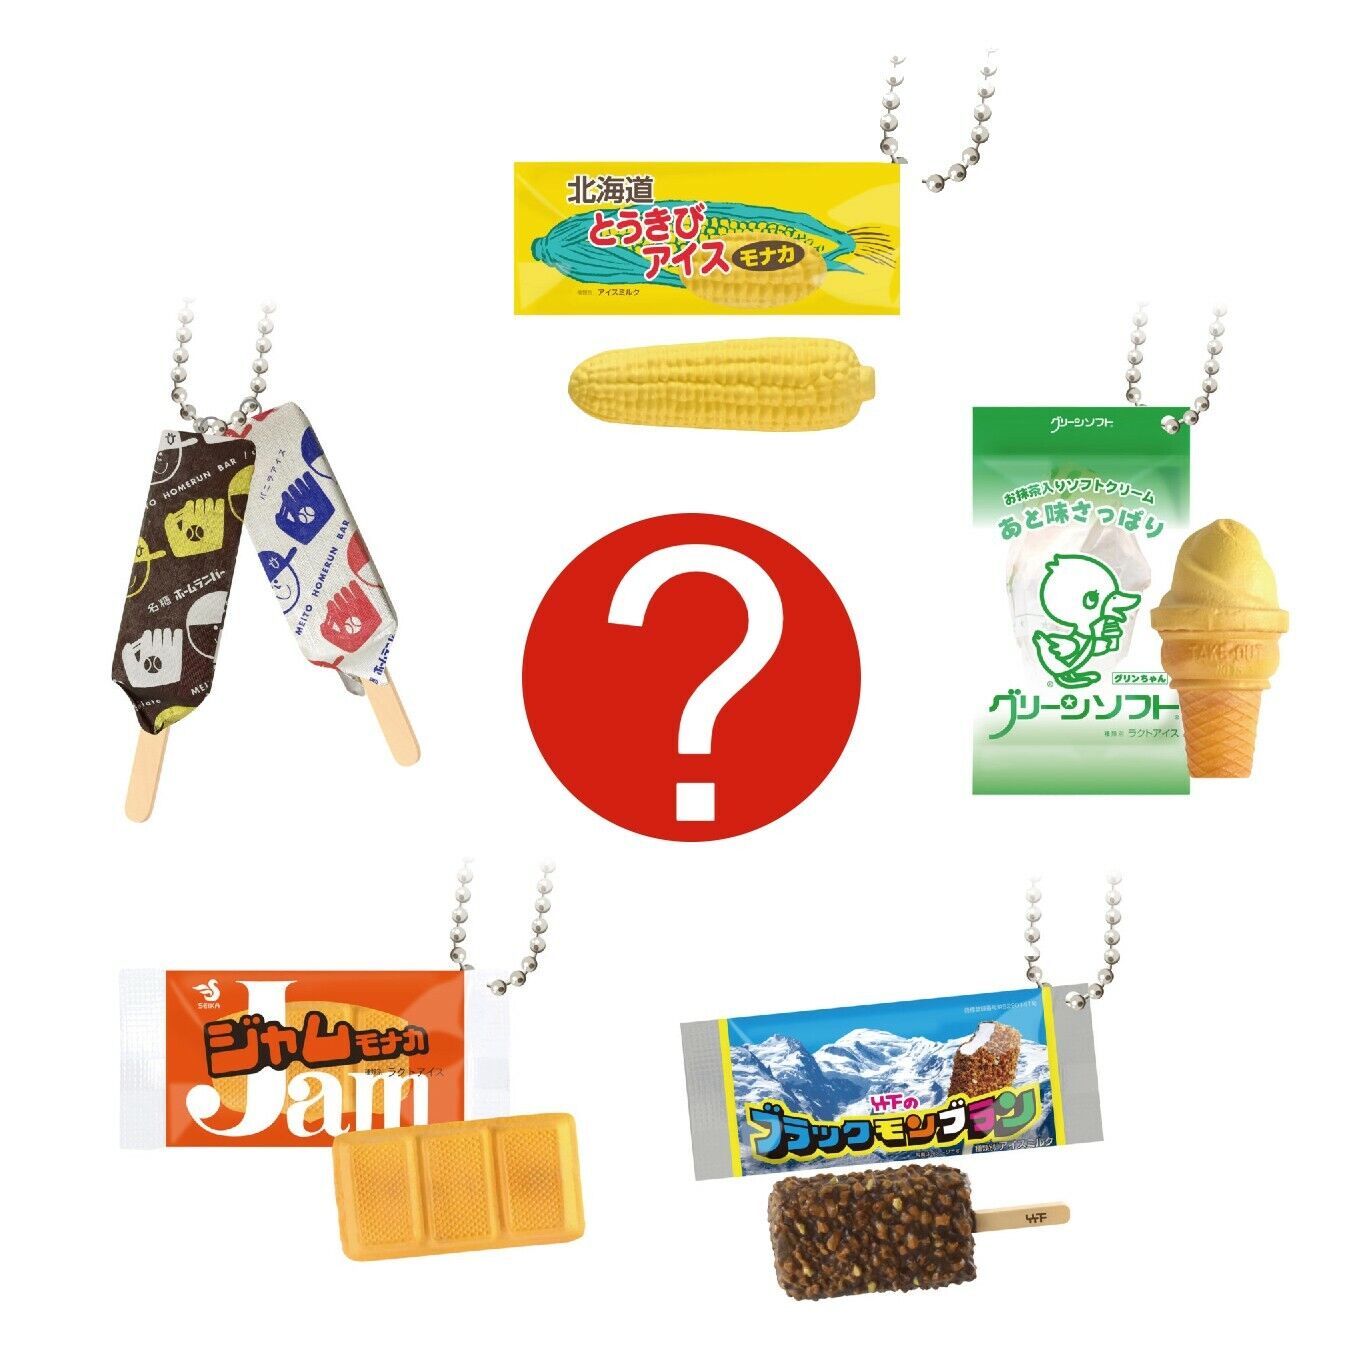 Japanese Blind Box Fake Food Keychain Ice Cream Miniature 1 Random Figure